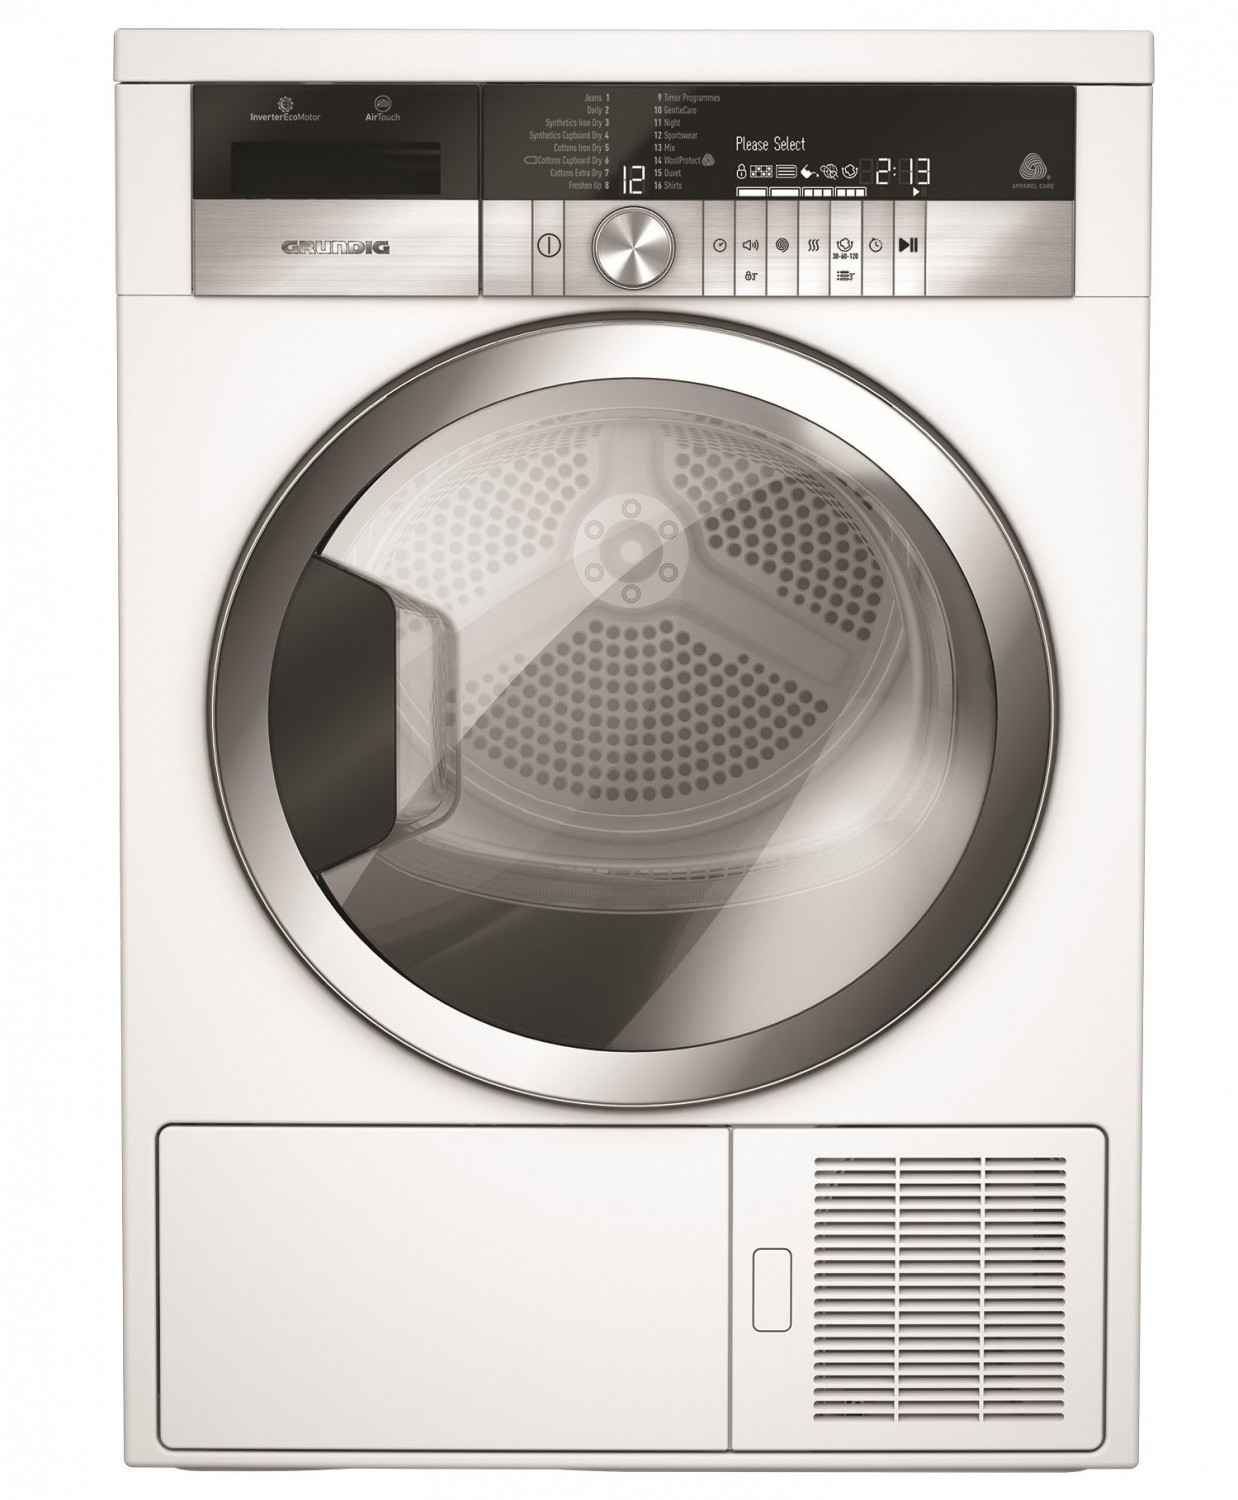 Haushaltsgroßgeräte Waschmaschine und Trockner von Grundig - Knitterschutz-Funktion und App-Steuerung - News, Bild 2